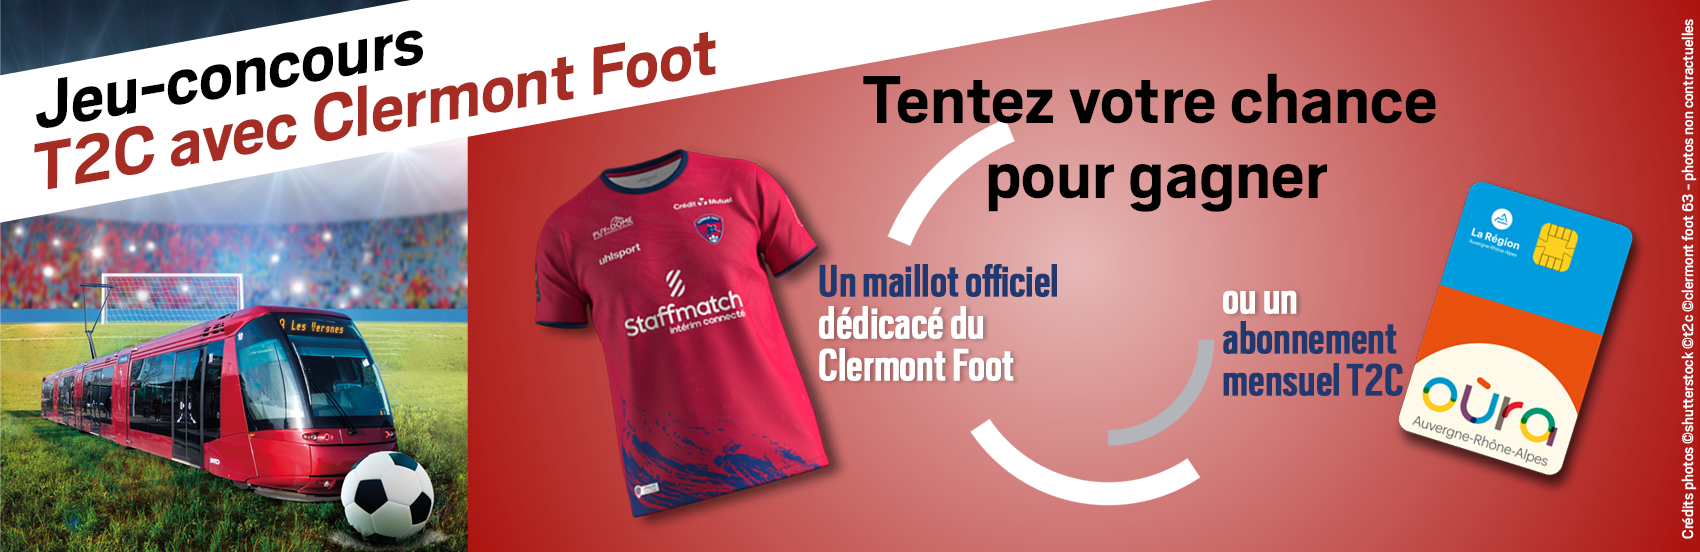 Bandeau jeu concours Clermont Foot